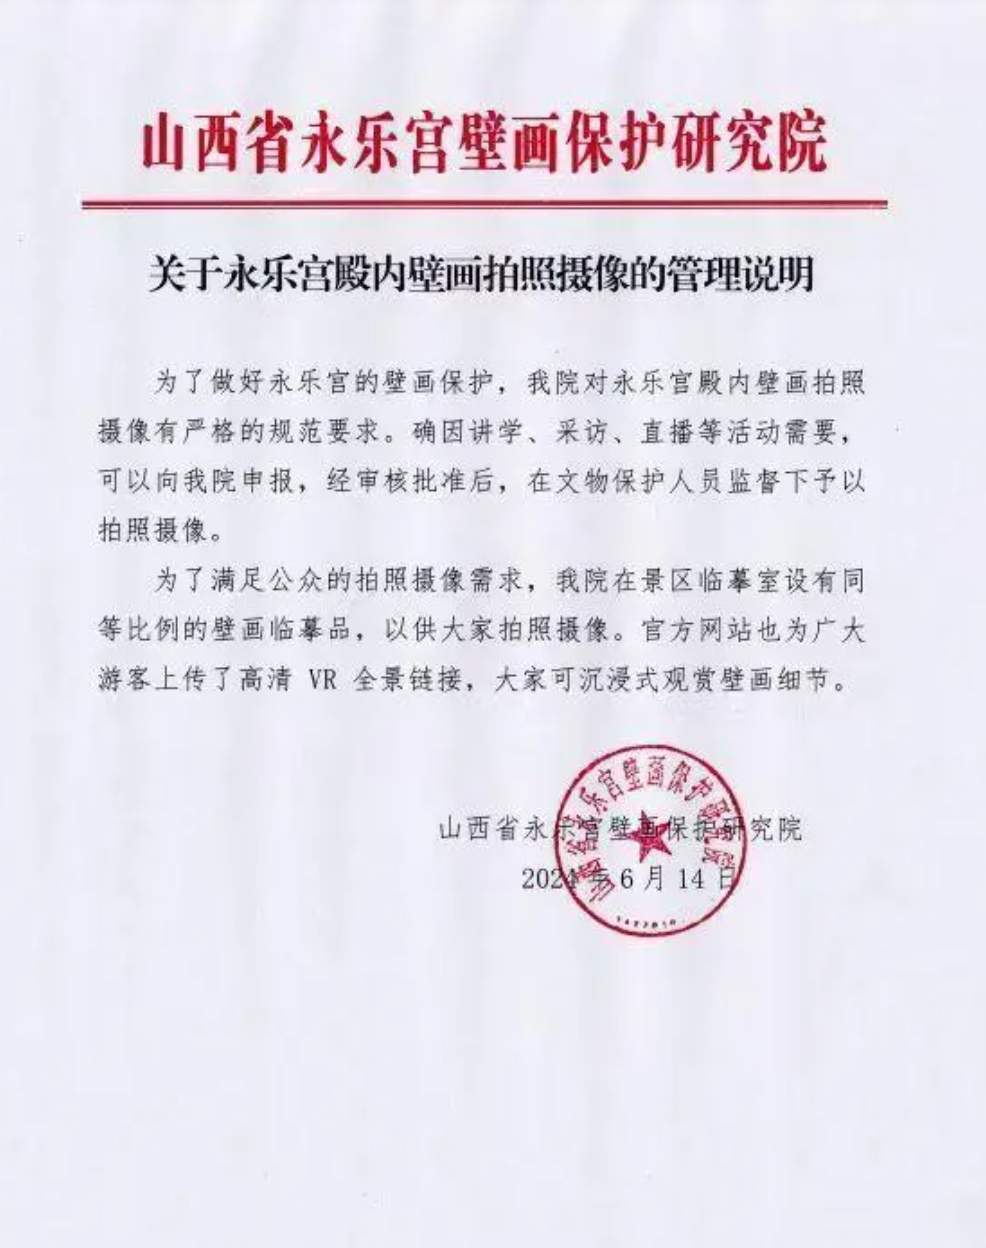 董宇辉在永乐宫拍摄壁画引质疑，官方明确了拍照摄像的相关规定  第1张